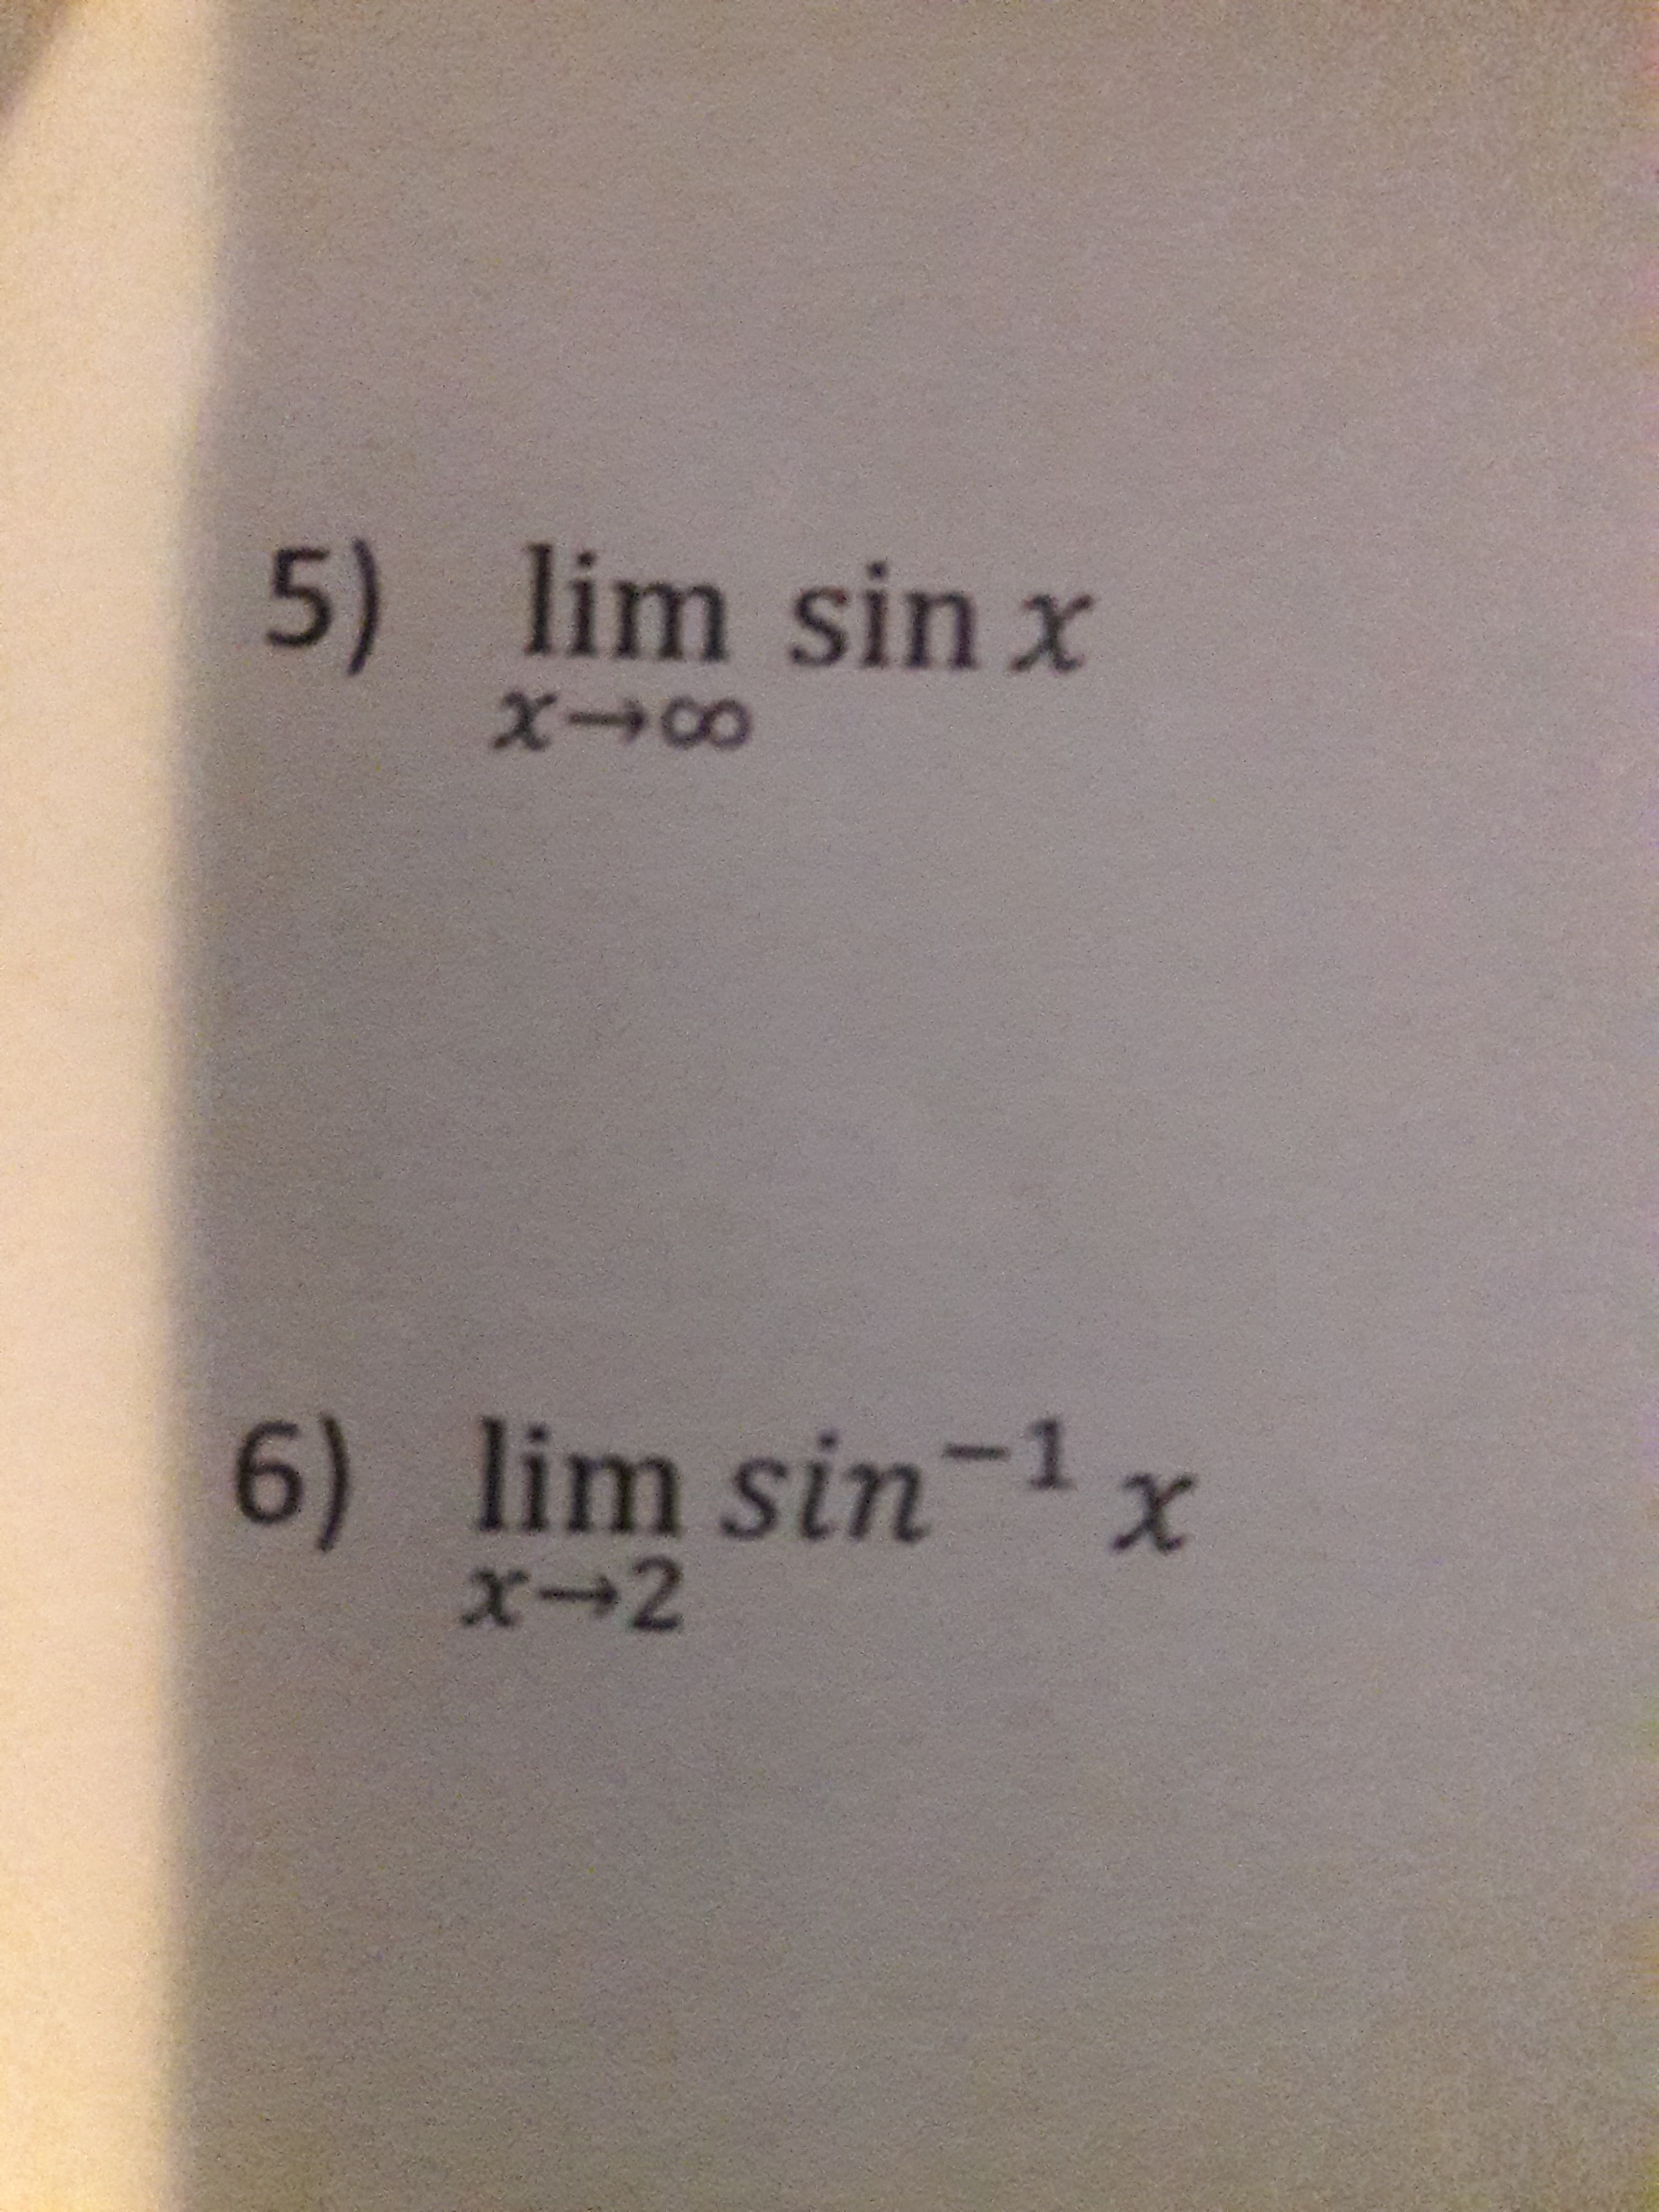 5) lim sin x
6) lim sin1x
x+2
